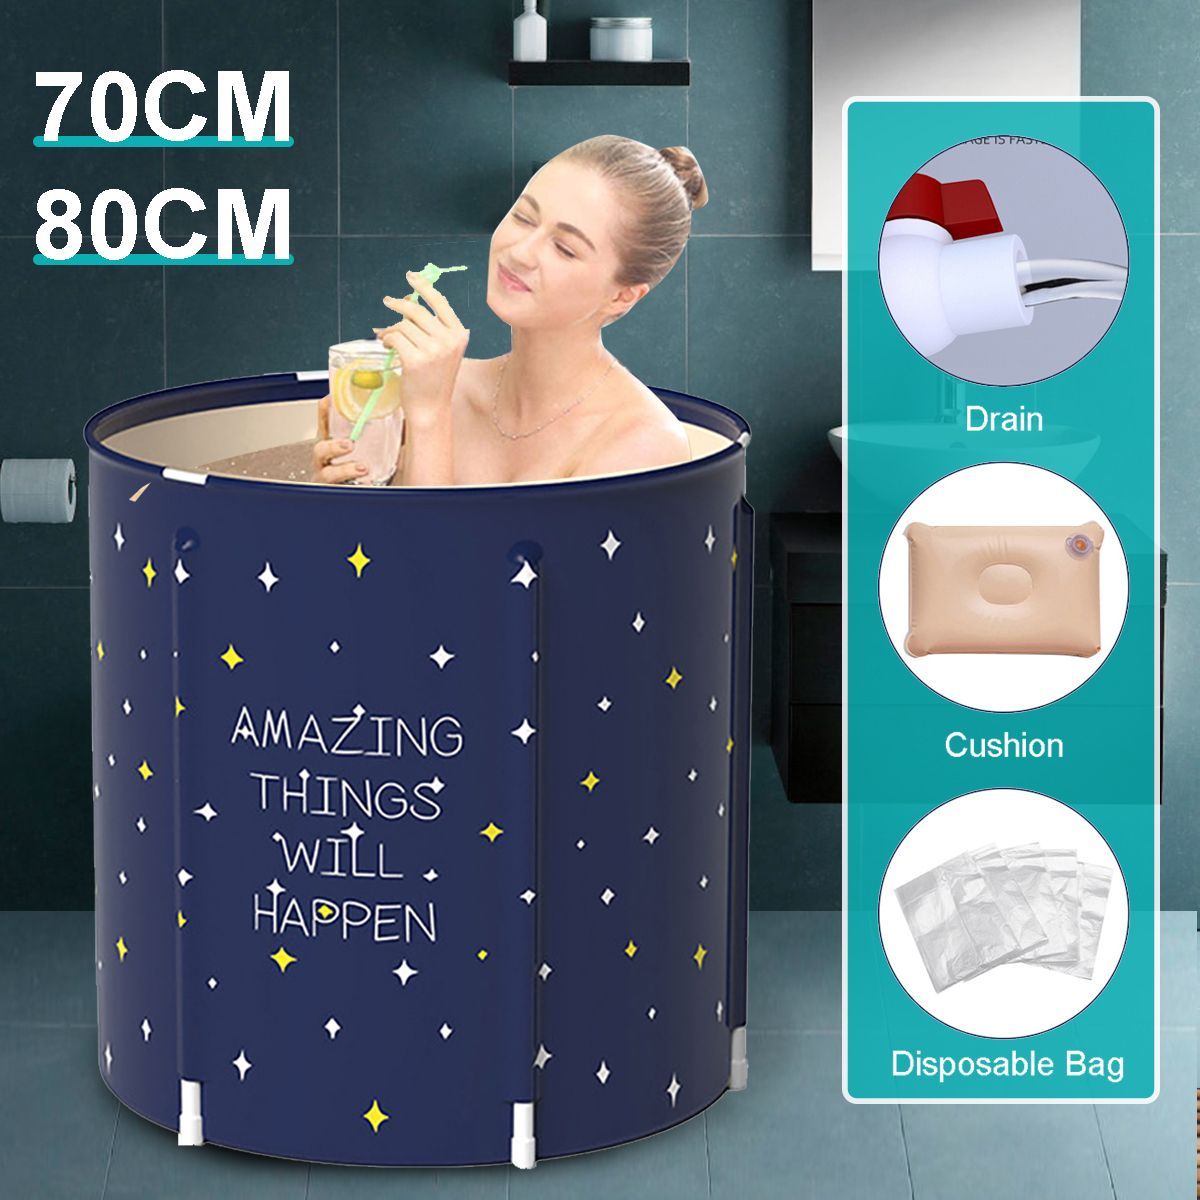 70x70cm80x80cm-Adult-Portable-Bathtub-Inflatable-Bath-Tub-PVC-Folding-PVC-Home-Spa-Xmas-Gift-1767276